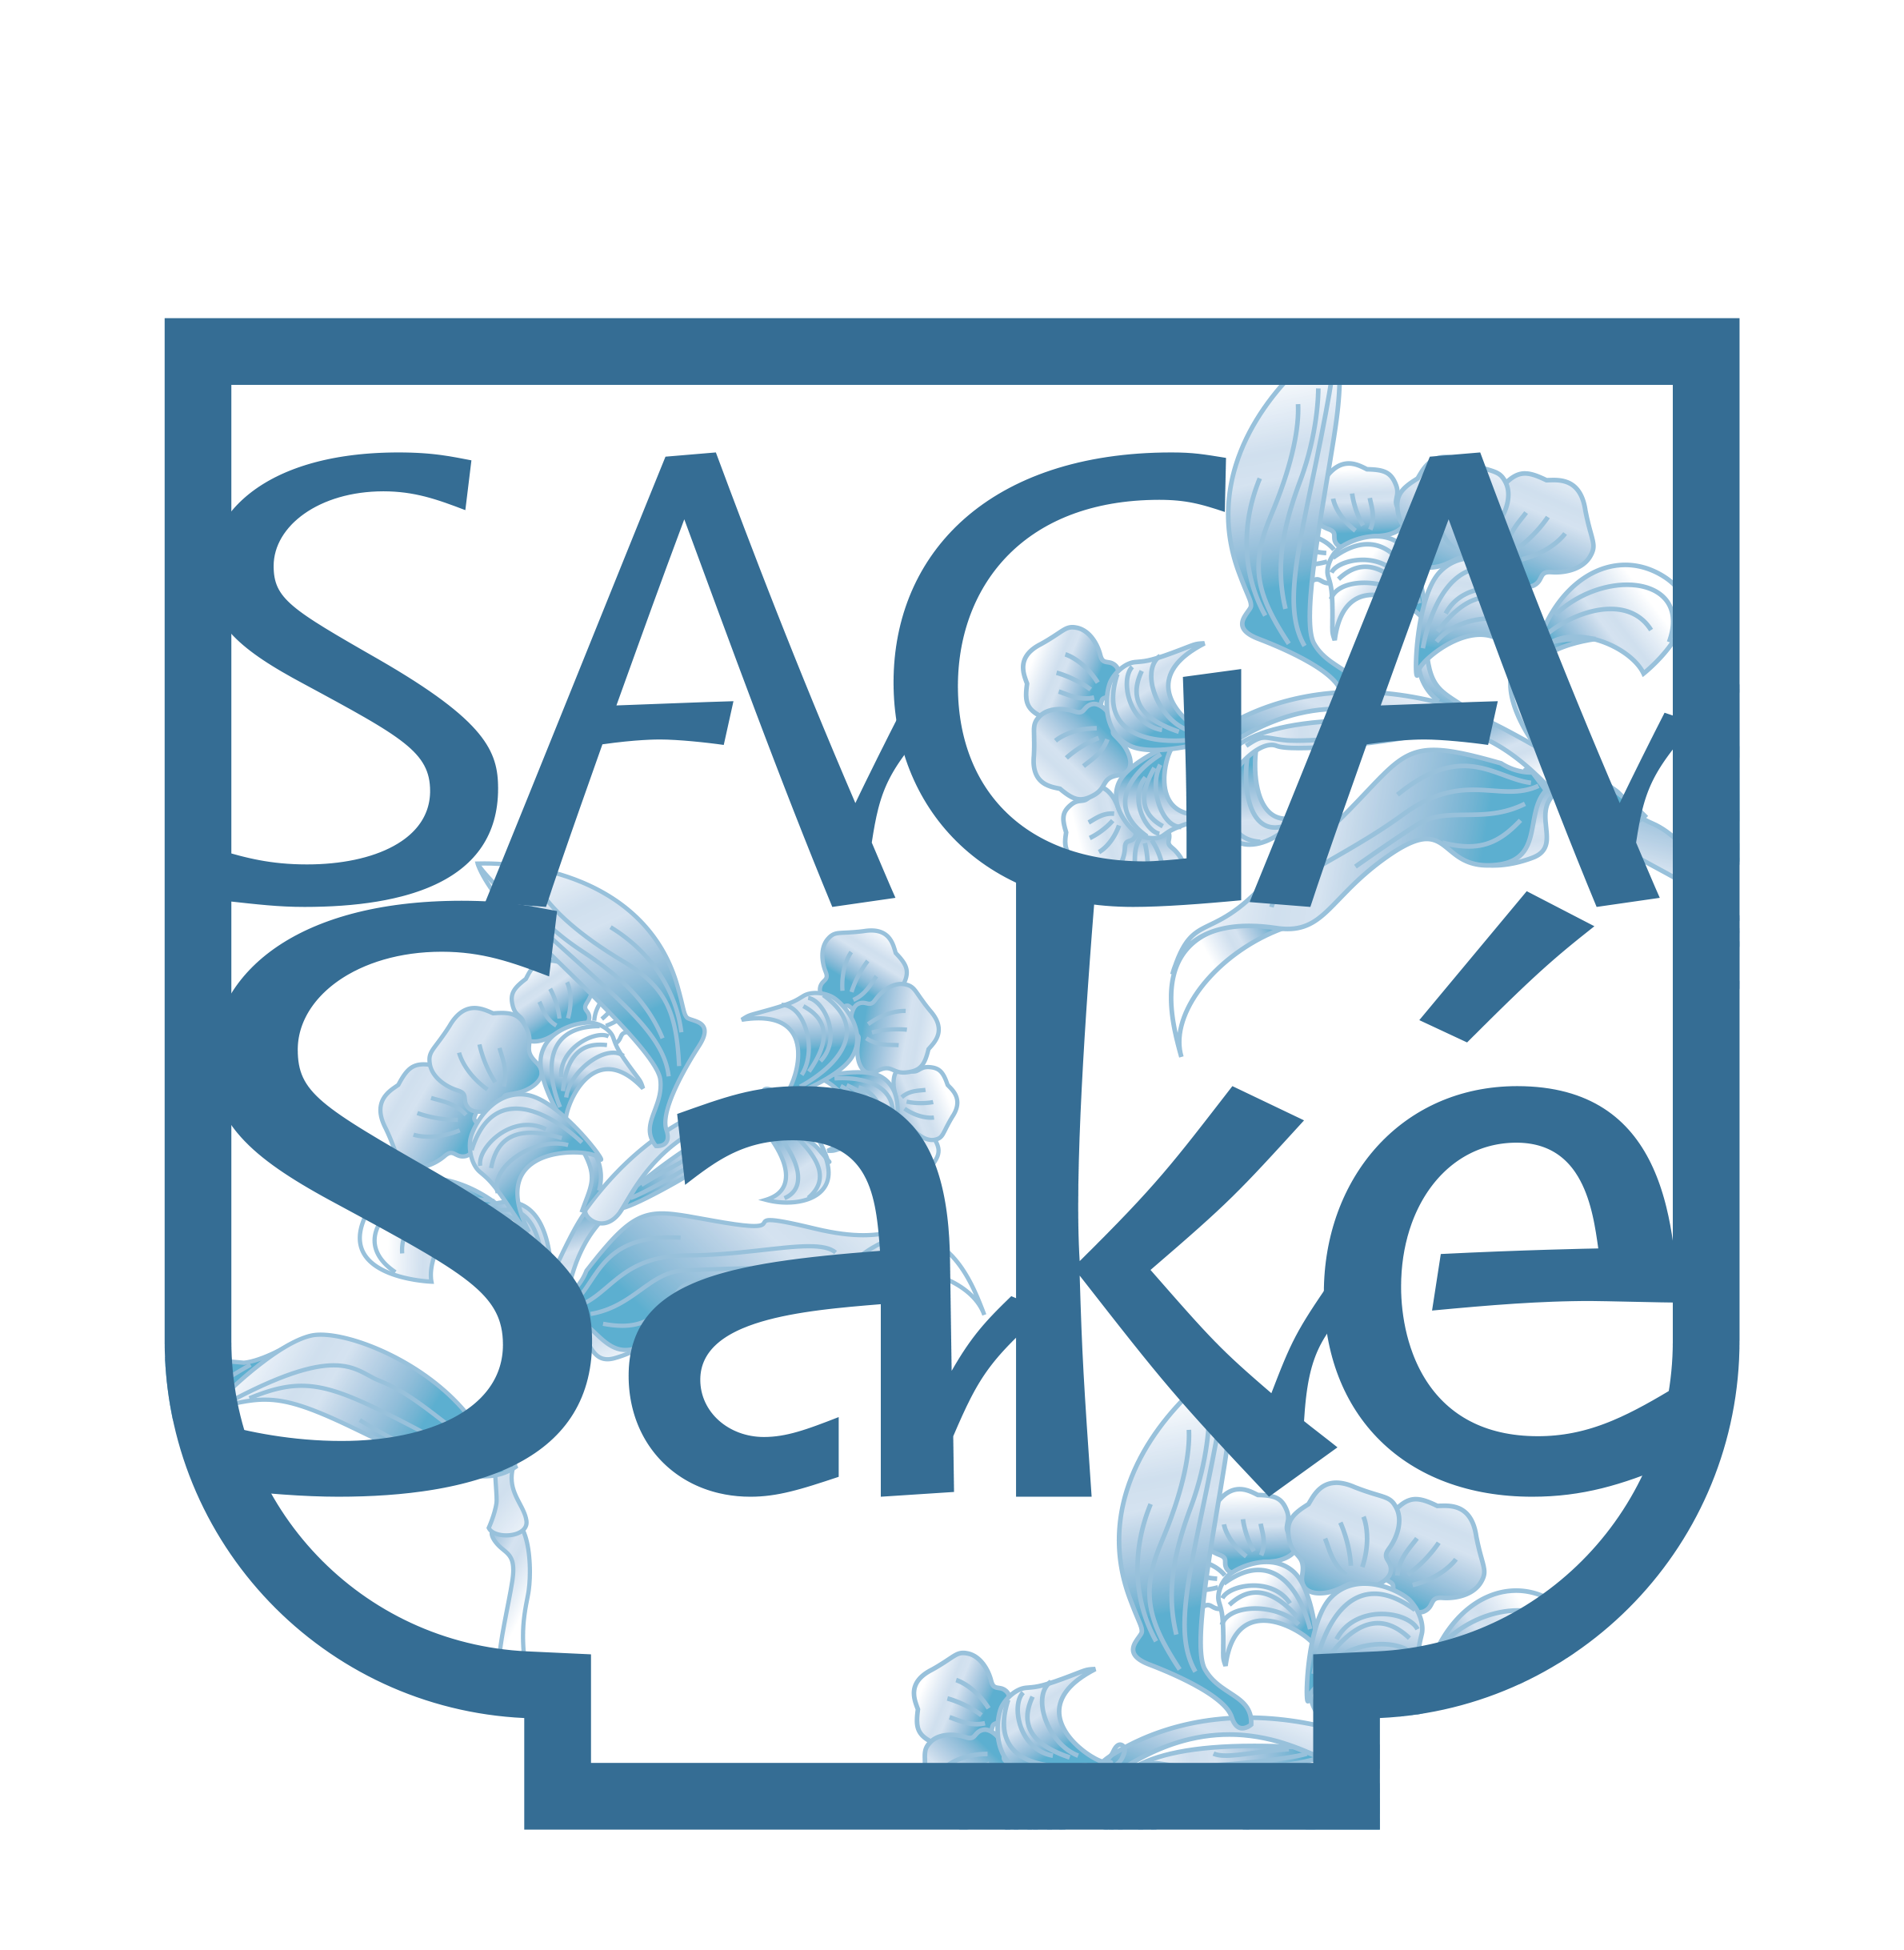 saga-promotion-logo